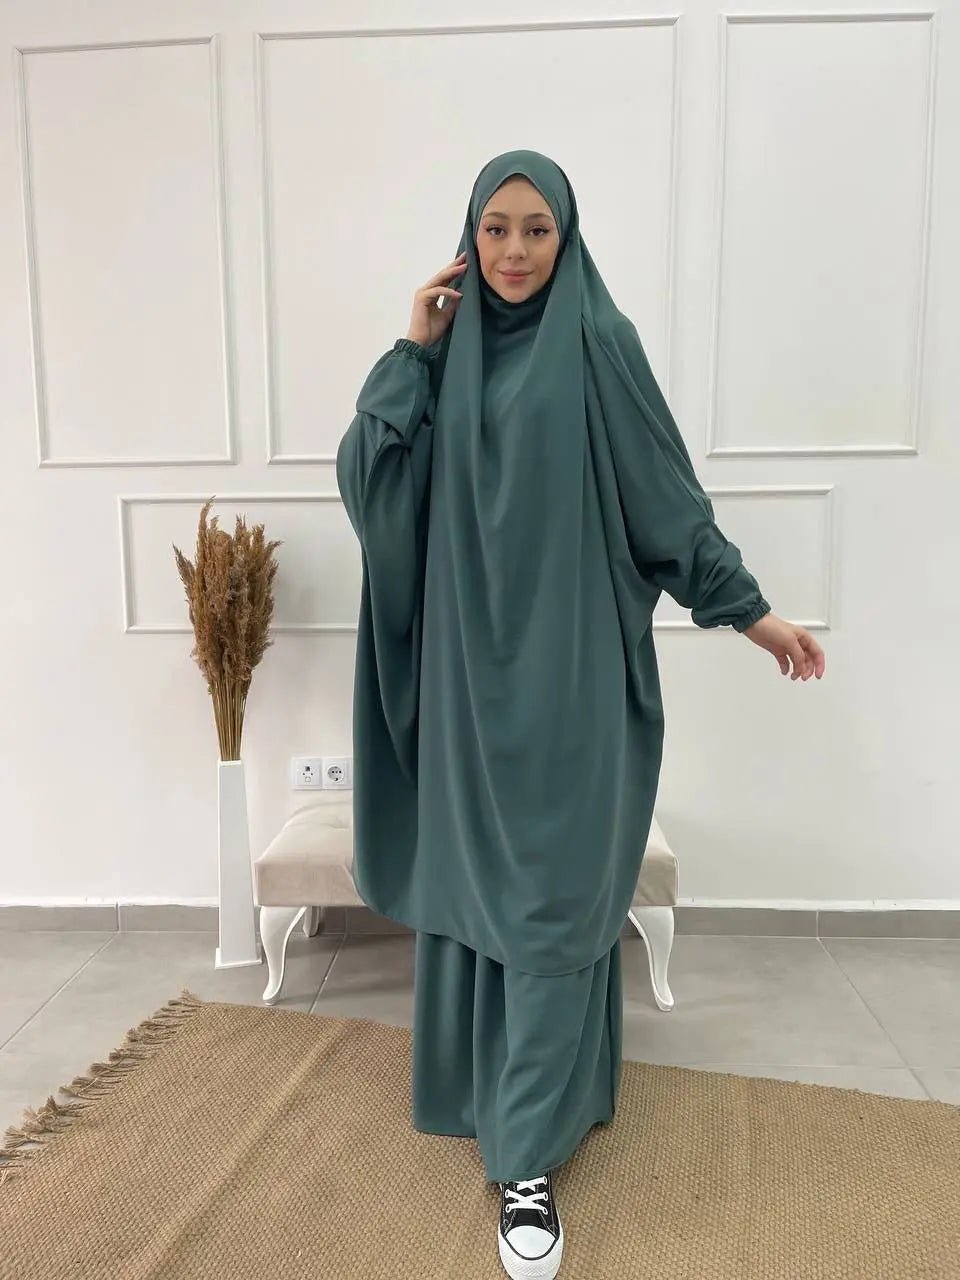 Jilbab qualité supérieure - Turquoise - MON HIJAB MODEST co